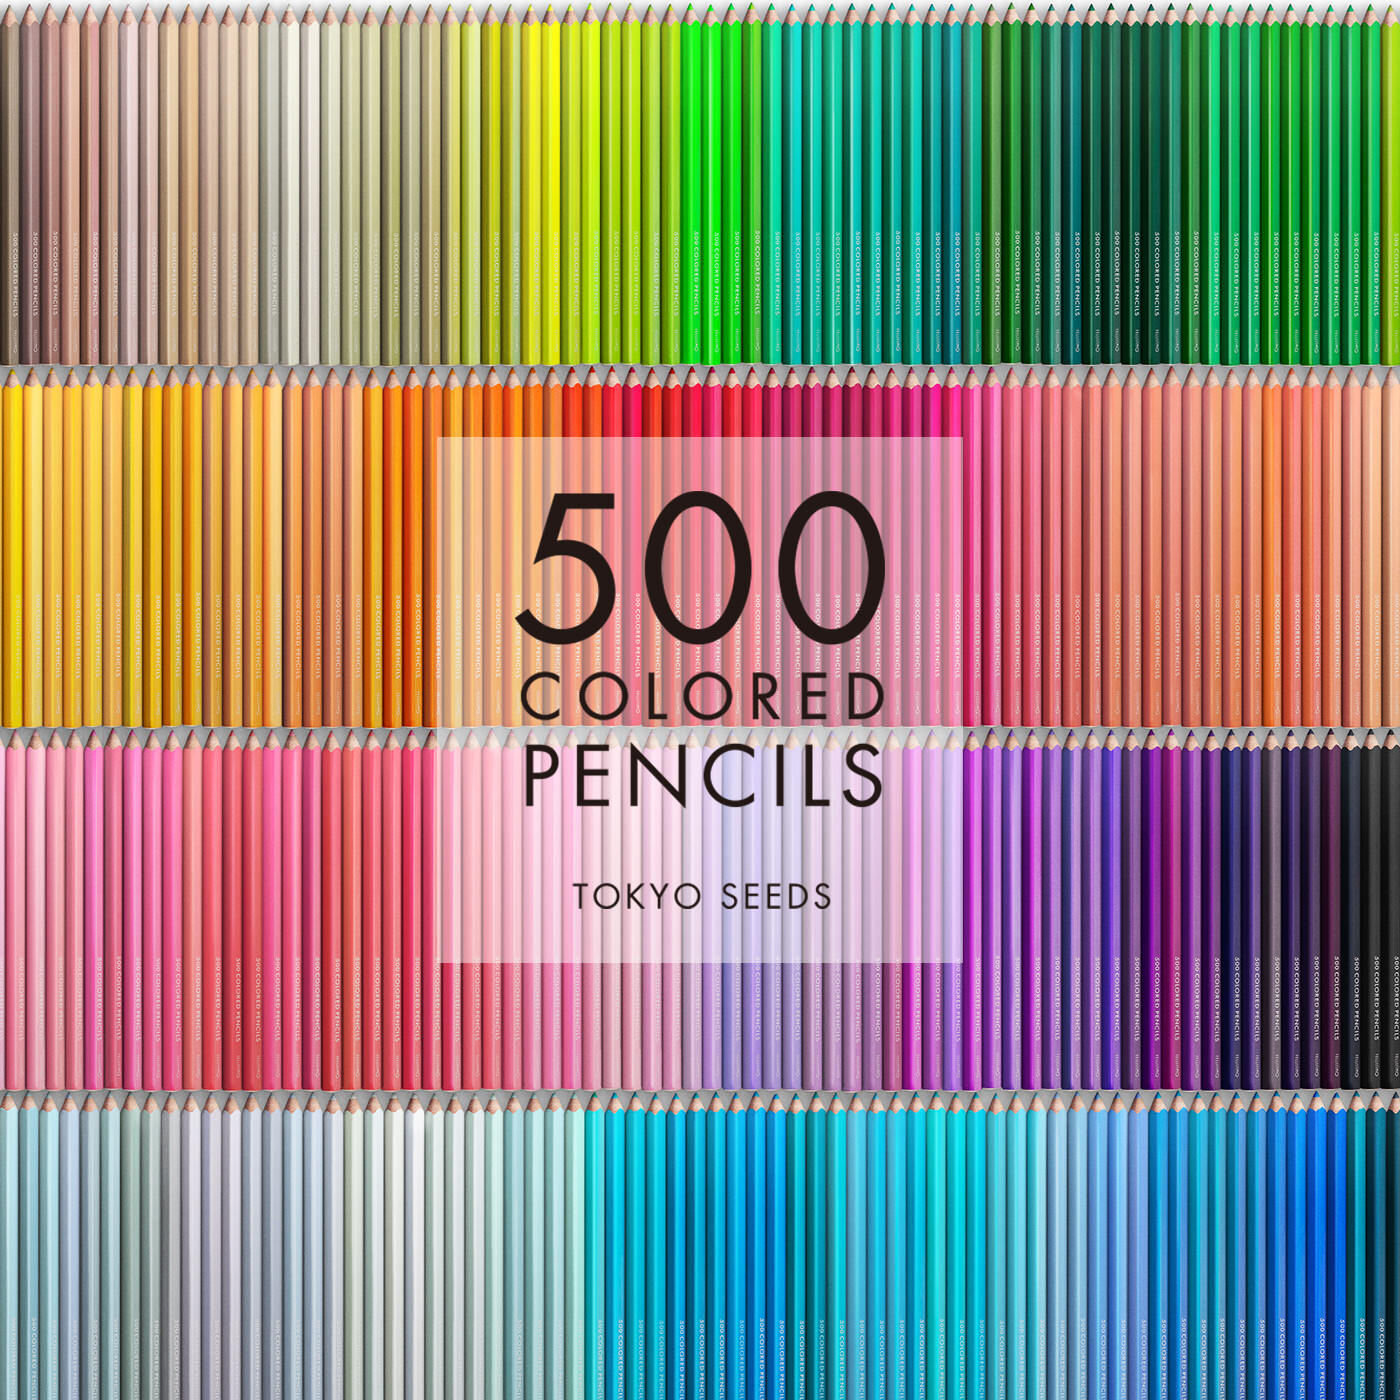 Real Stock|【70/500 SPARKLING BUBBLES】500色の色えんぴつ TOKYO SEEDS|1992年、世界初の「500色」という膨大な色数の色えんぴつが誕生して以来、その販売数は発売当初から合わせると、世界55ヵ国10万セット以上。今回、メイド・イン・ジャパンにこだわり、すべてが新しく生まれ変わって登場しました。